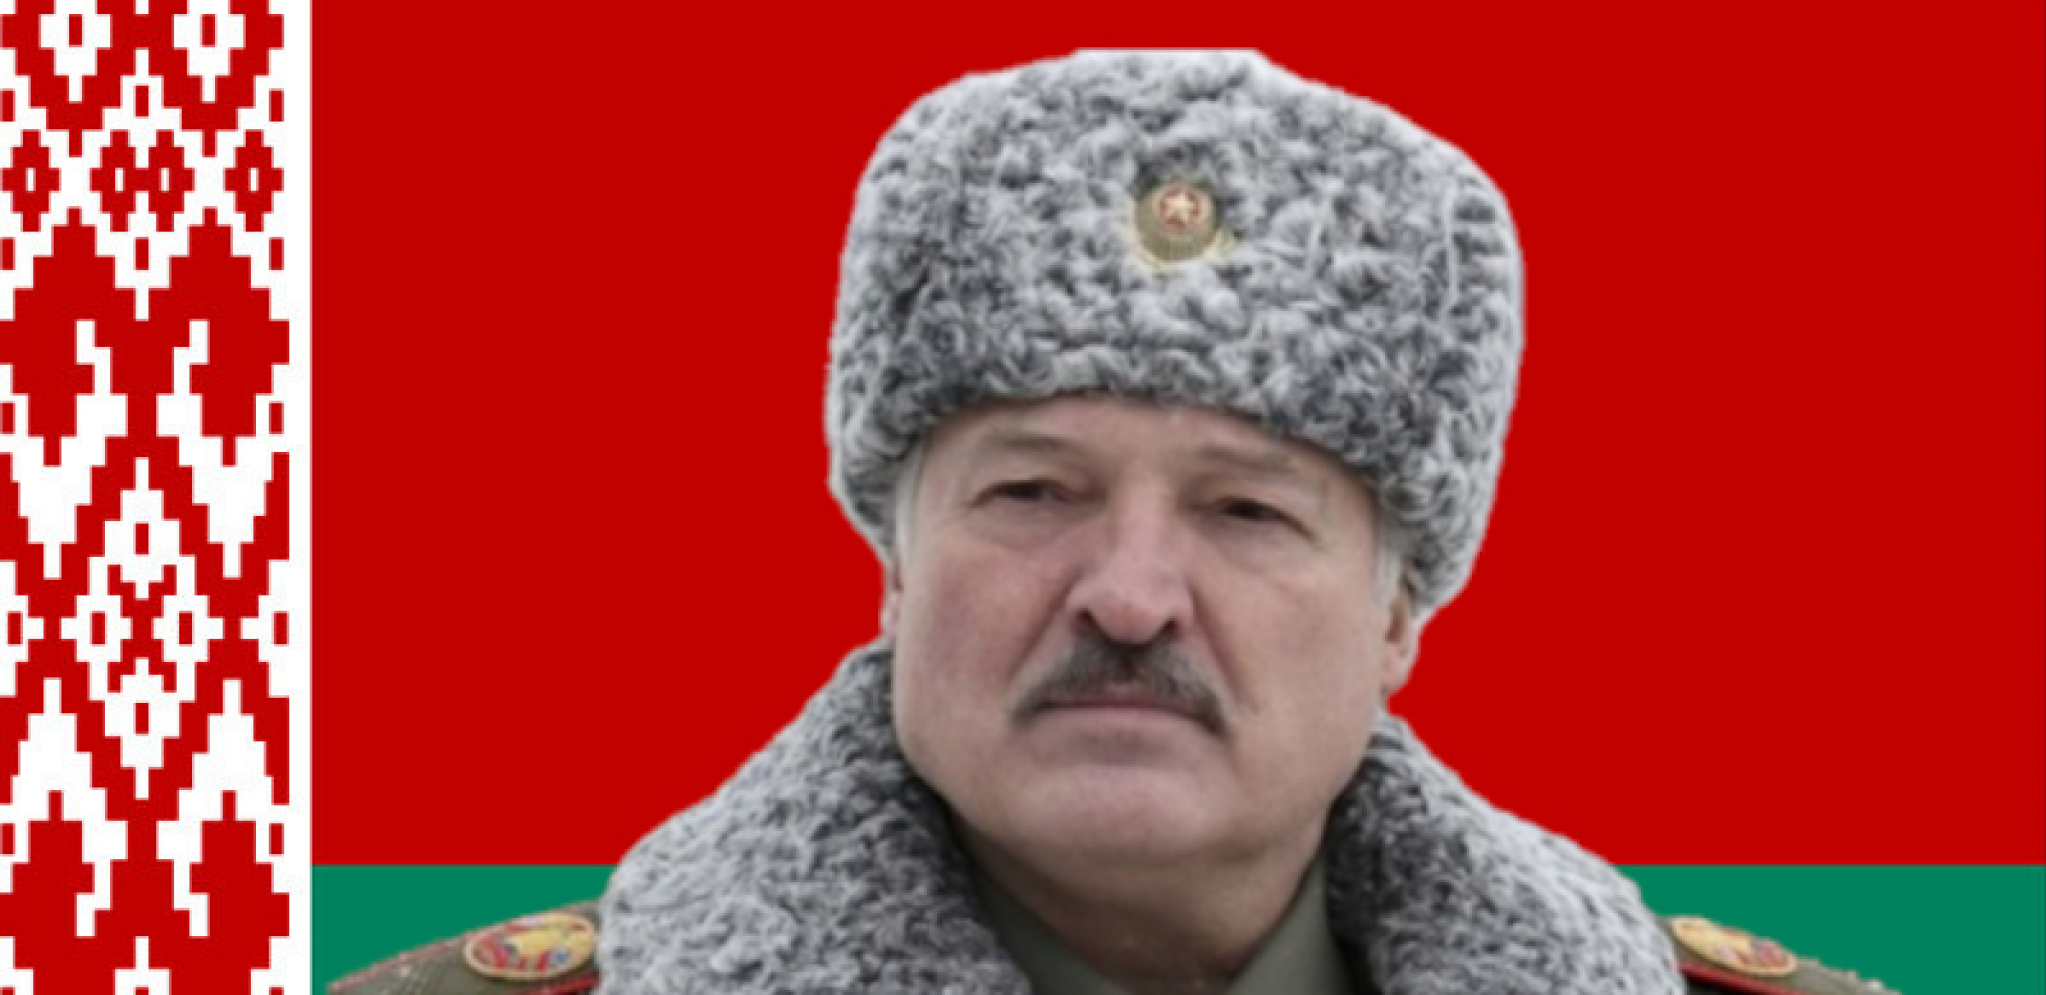 UKRAJINA NAPALA BELORUSIJU? Lukašenko tvrdi: "Pokušali su da udare na vojne ciljeve"